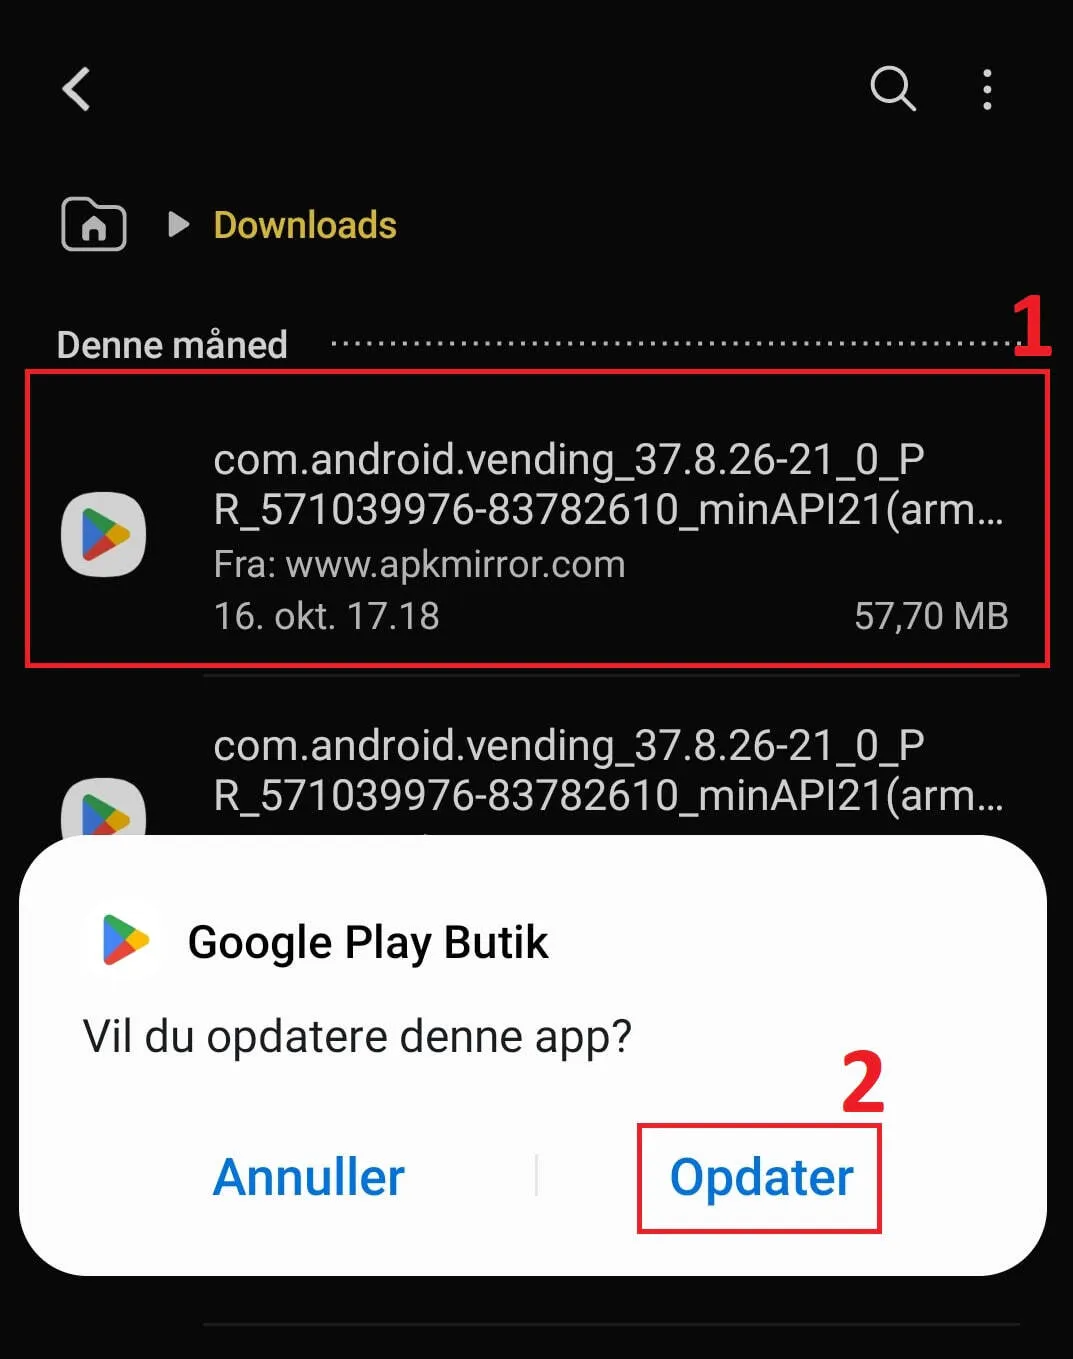 Installer Play Butikken på din Android-enhed